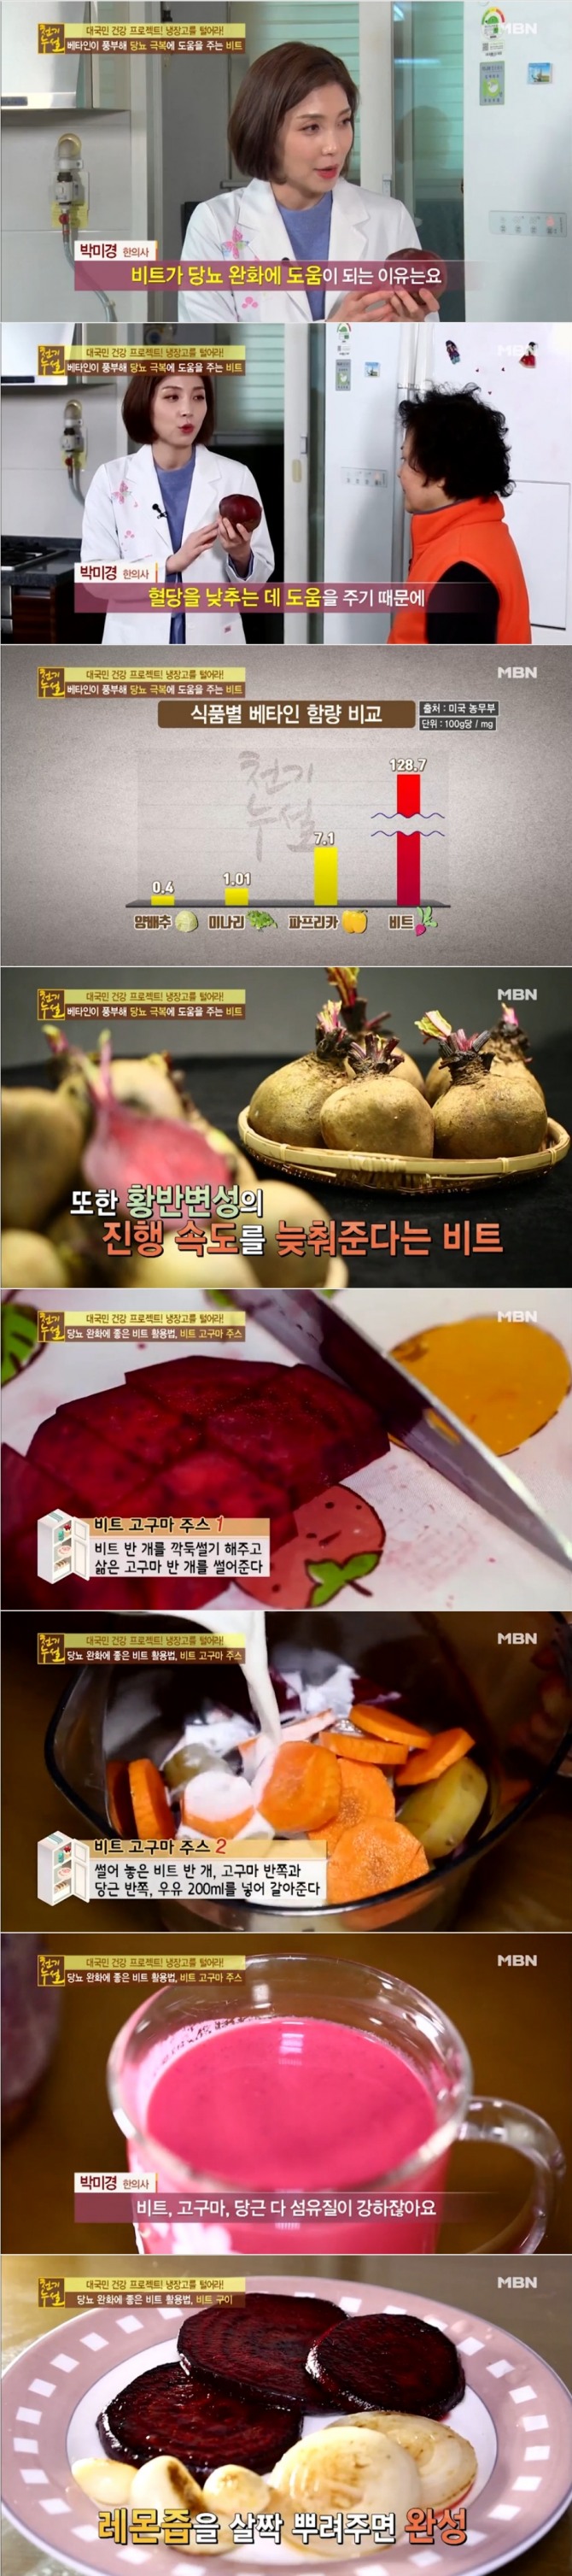 지난 25일 밤 방송된 MBN '천기누설'에서는 박미경 한의사가 출연, 당뇨에 도움이 되는 비트 주스 만드는 법과 비트 구이 레시피를 공개했다. 사진=MBN 방송 캡처